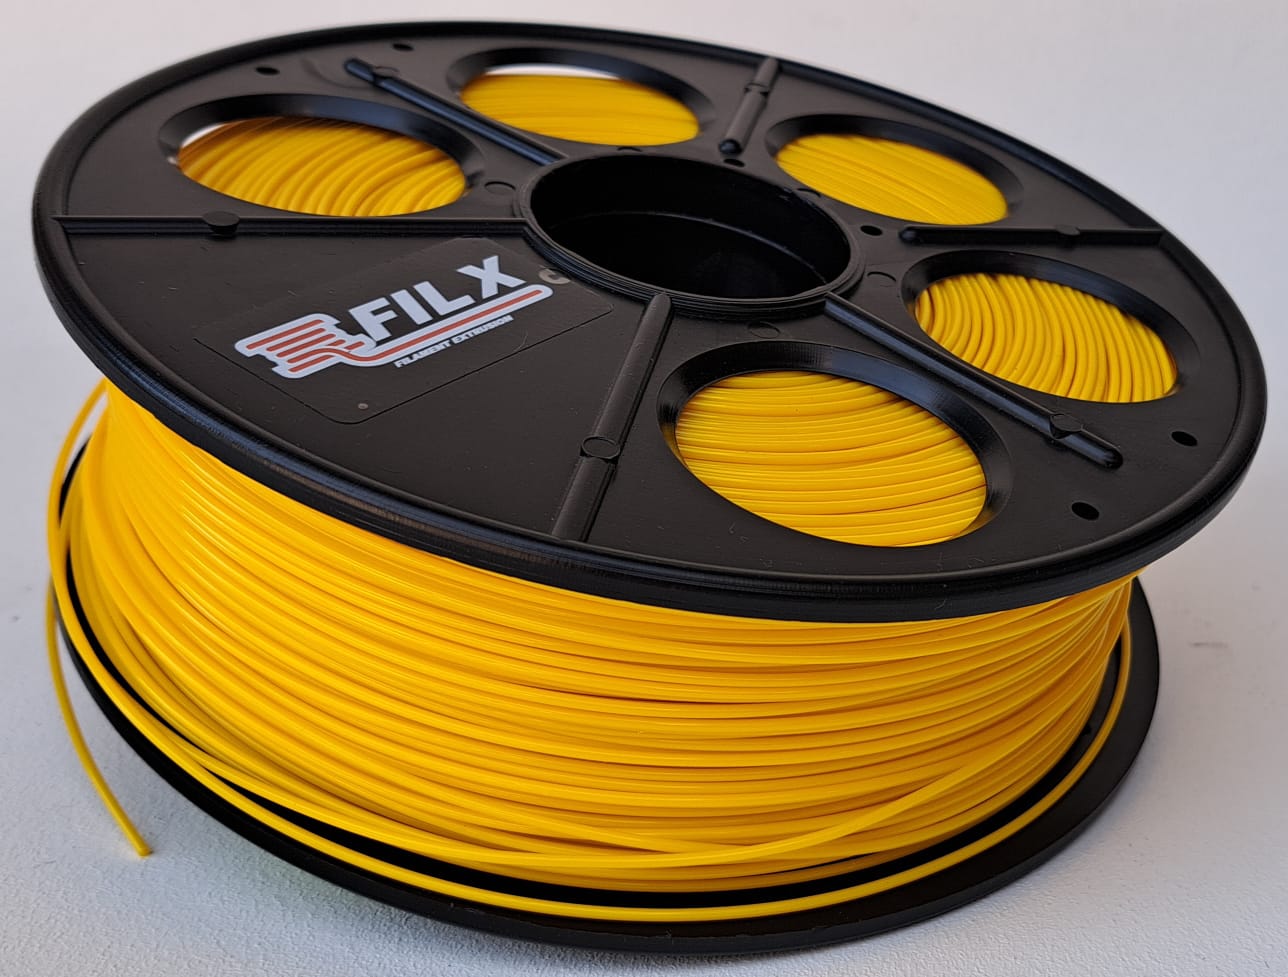 PETG 3D Printing Filament, 1.75mm 1KG